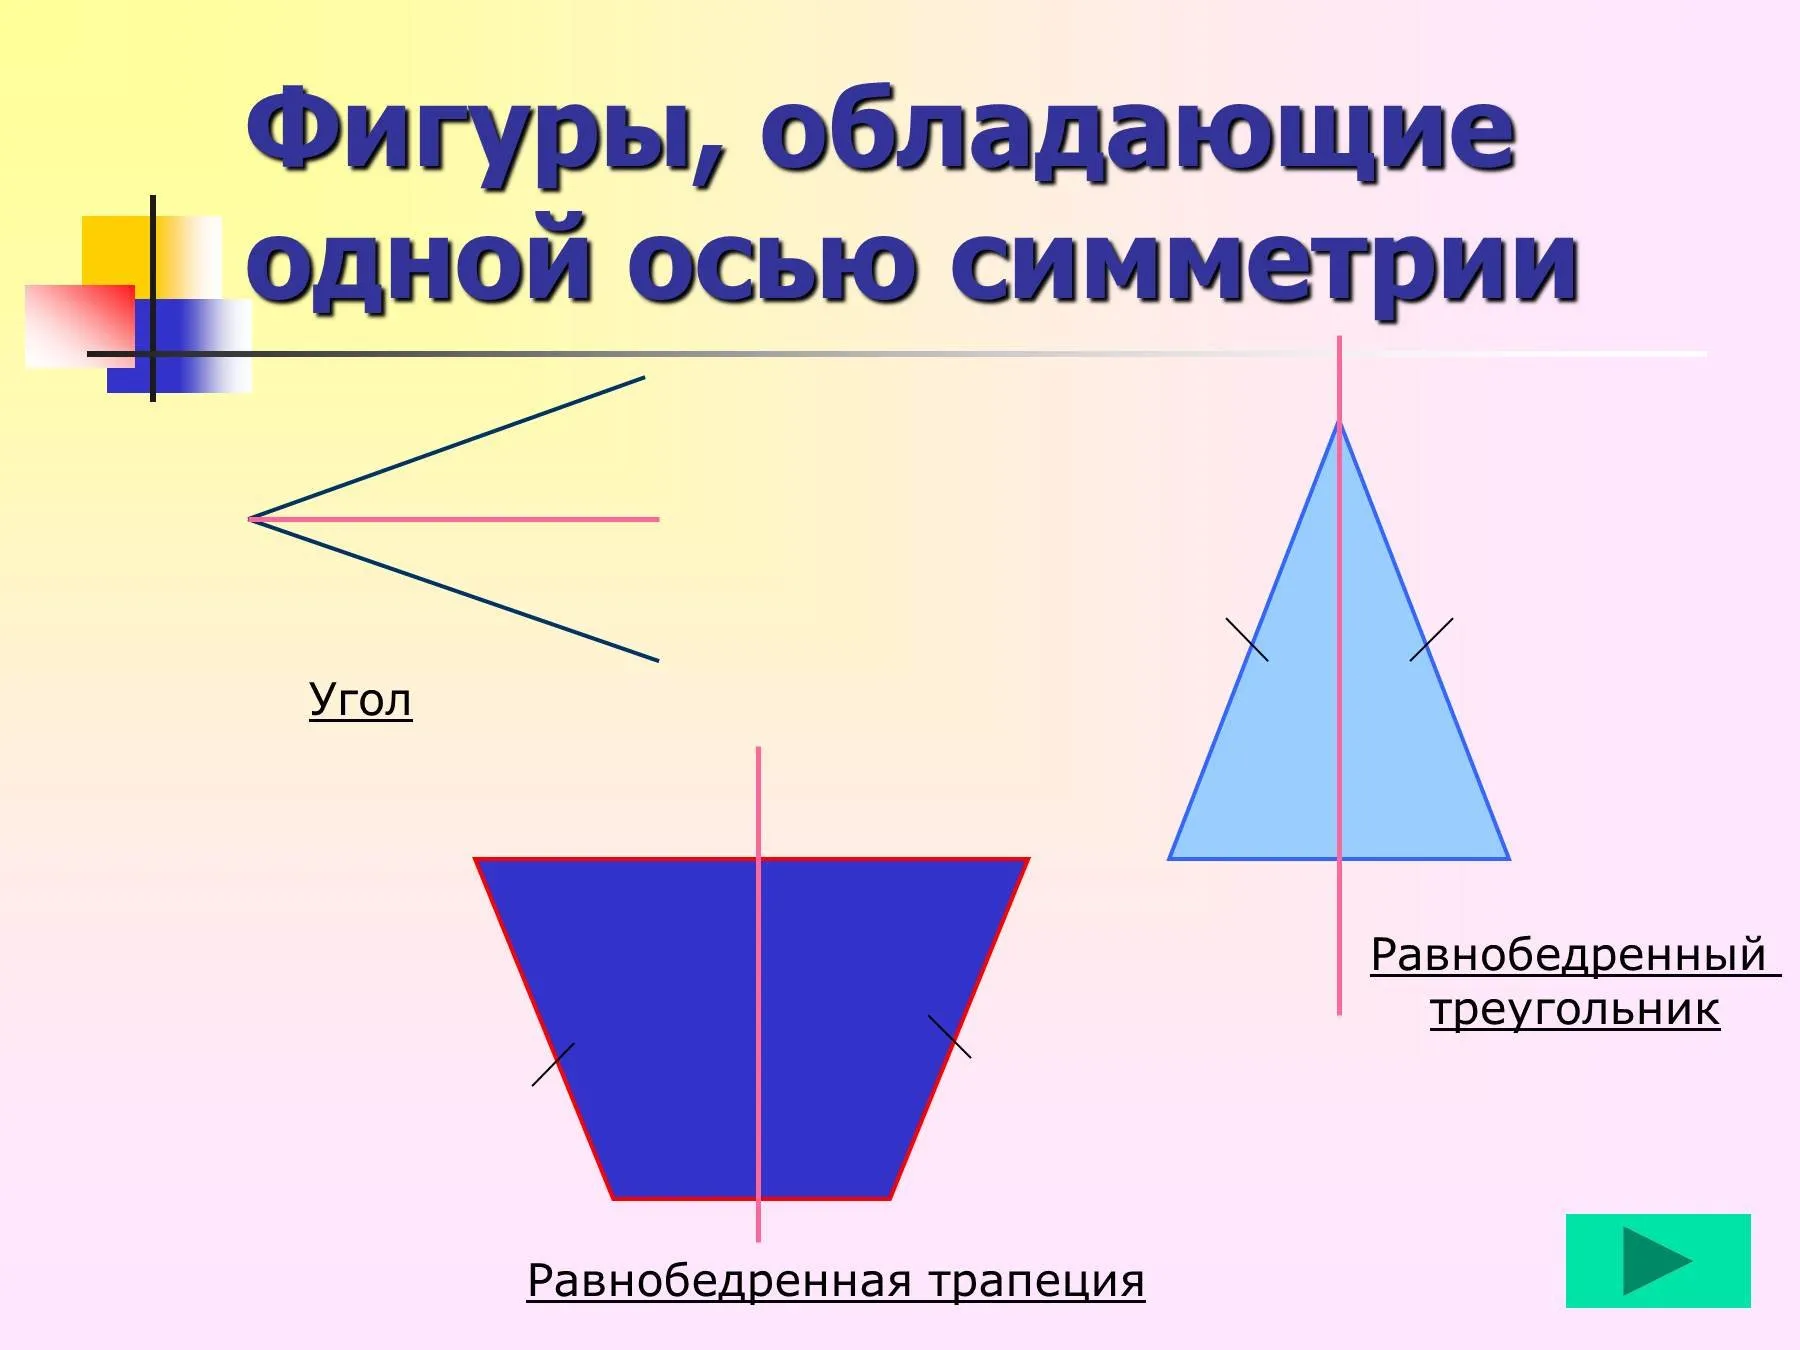 4 равнобедренный треугольник имеет три оси симметрии